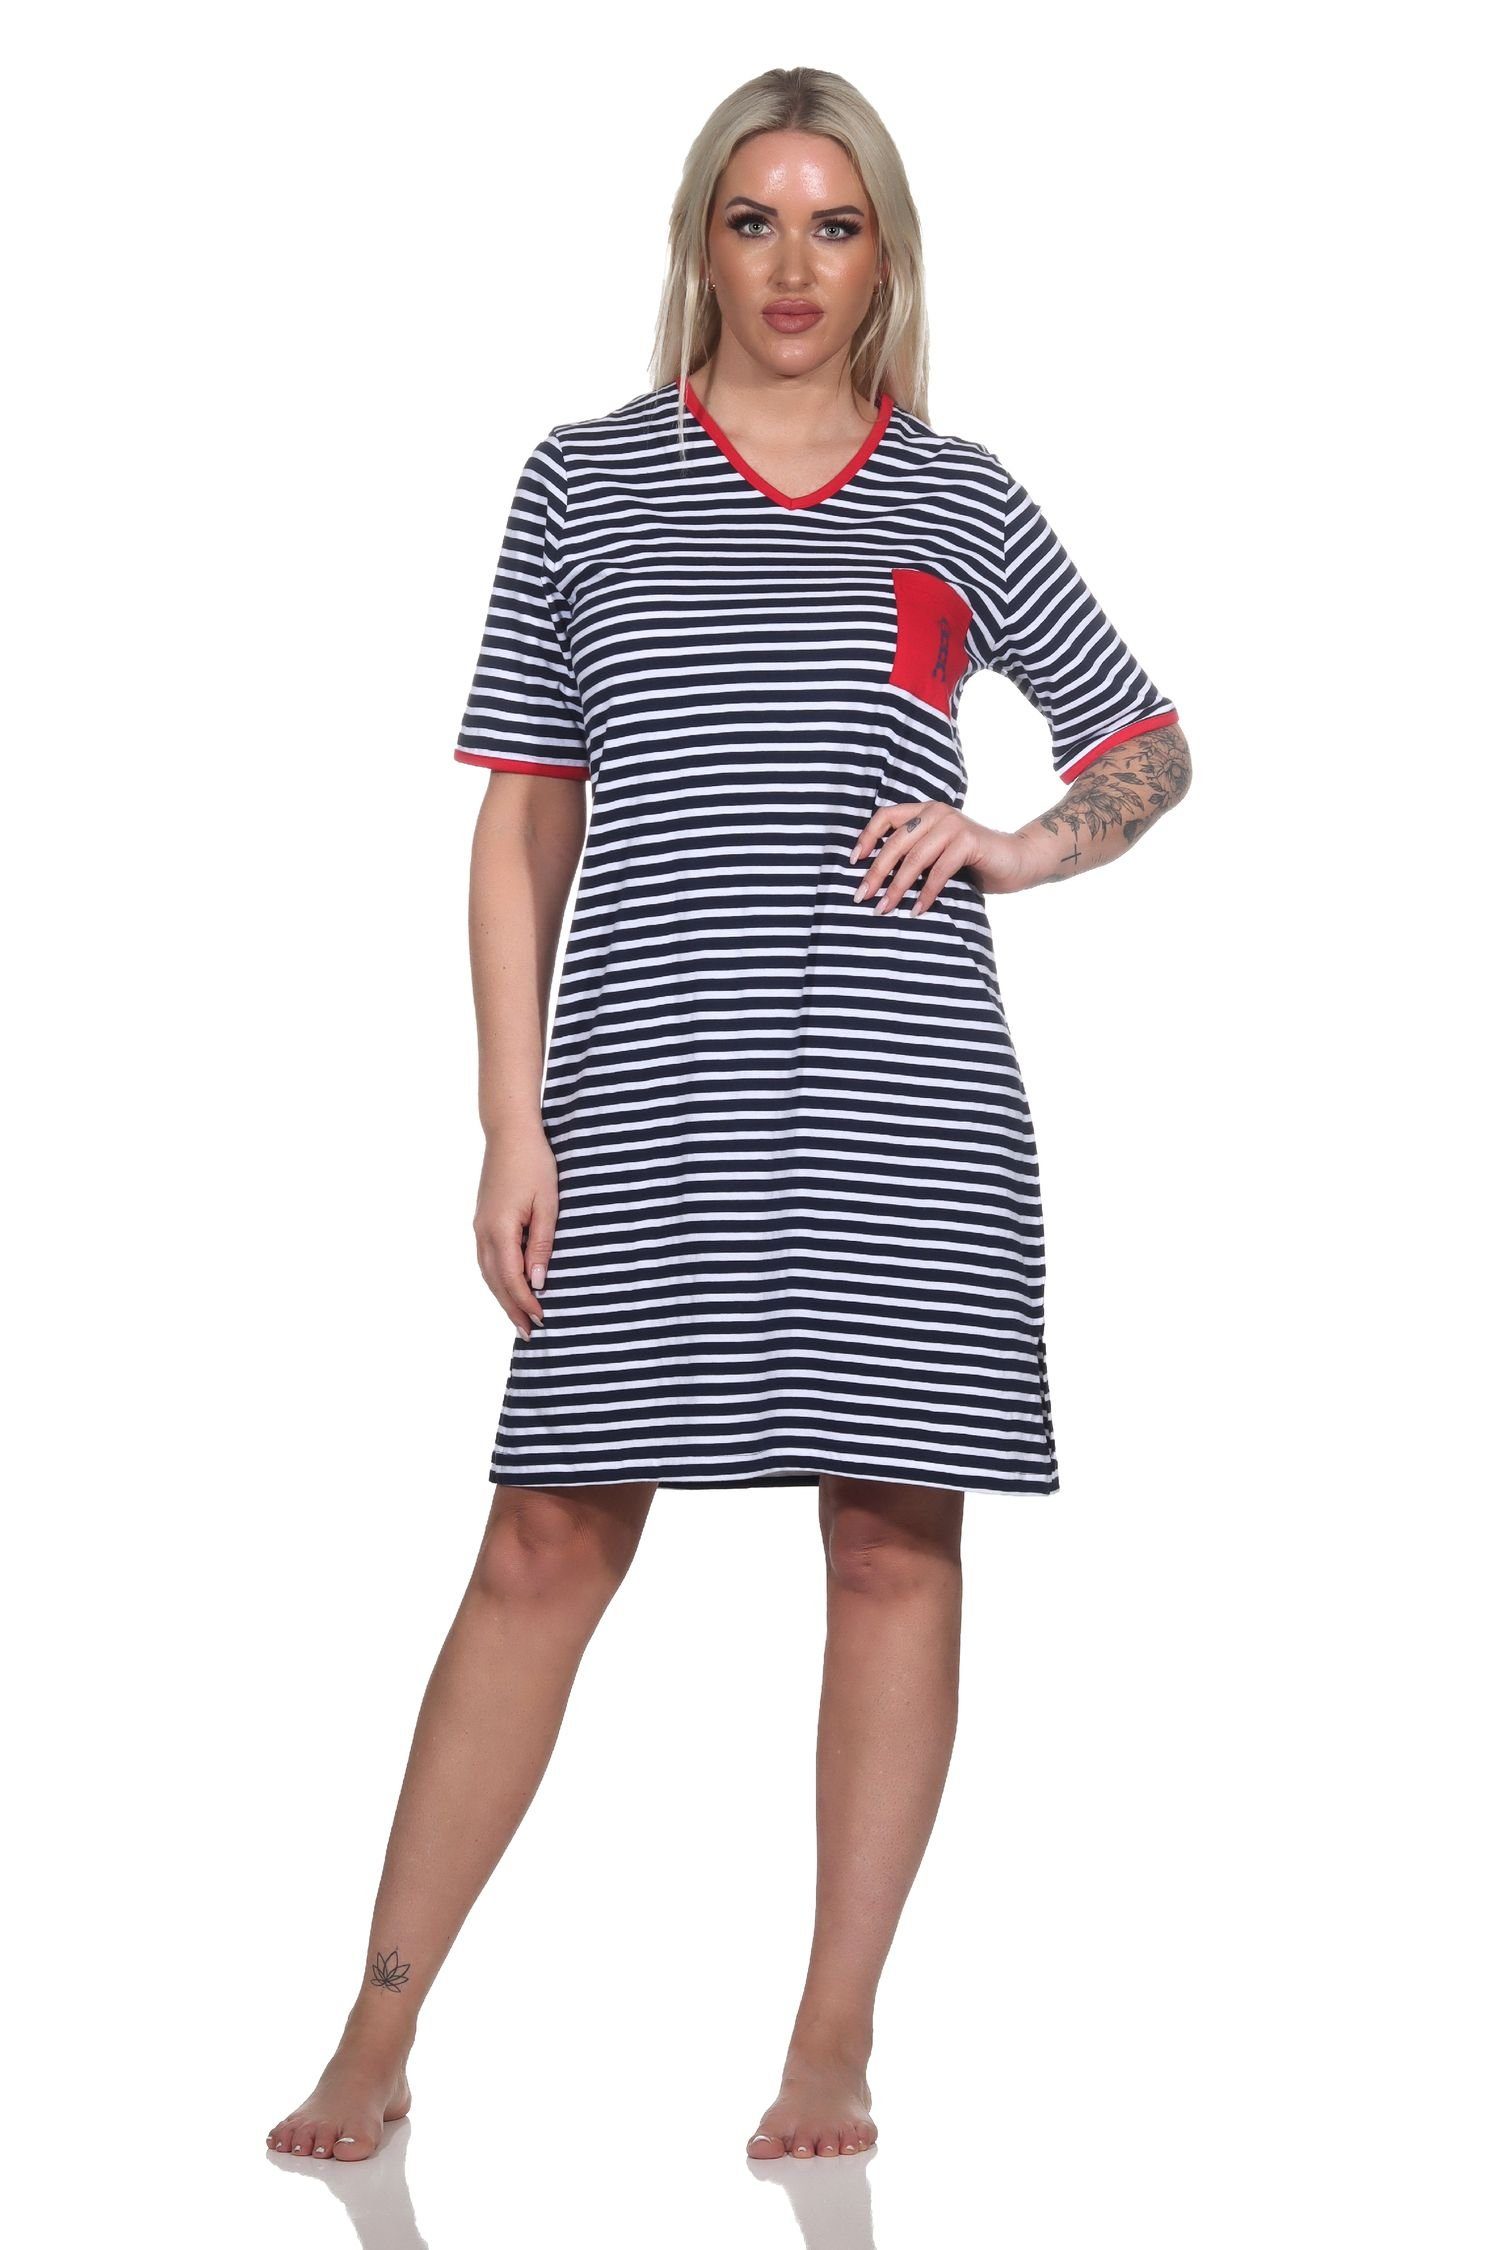 Normann Nachthemd Damen Kurzarm Motiv Nachthemd mit marine in Leuchtturm Optik maritimer und